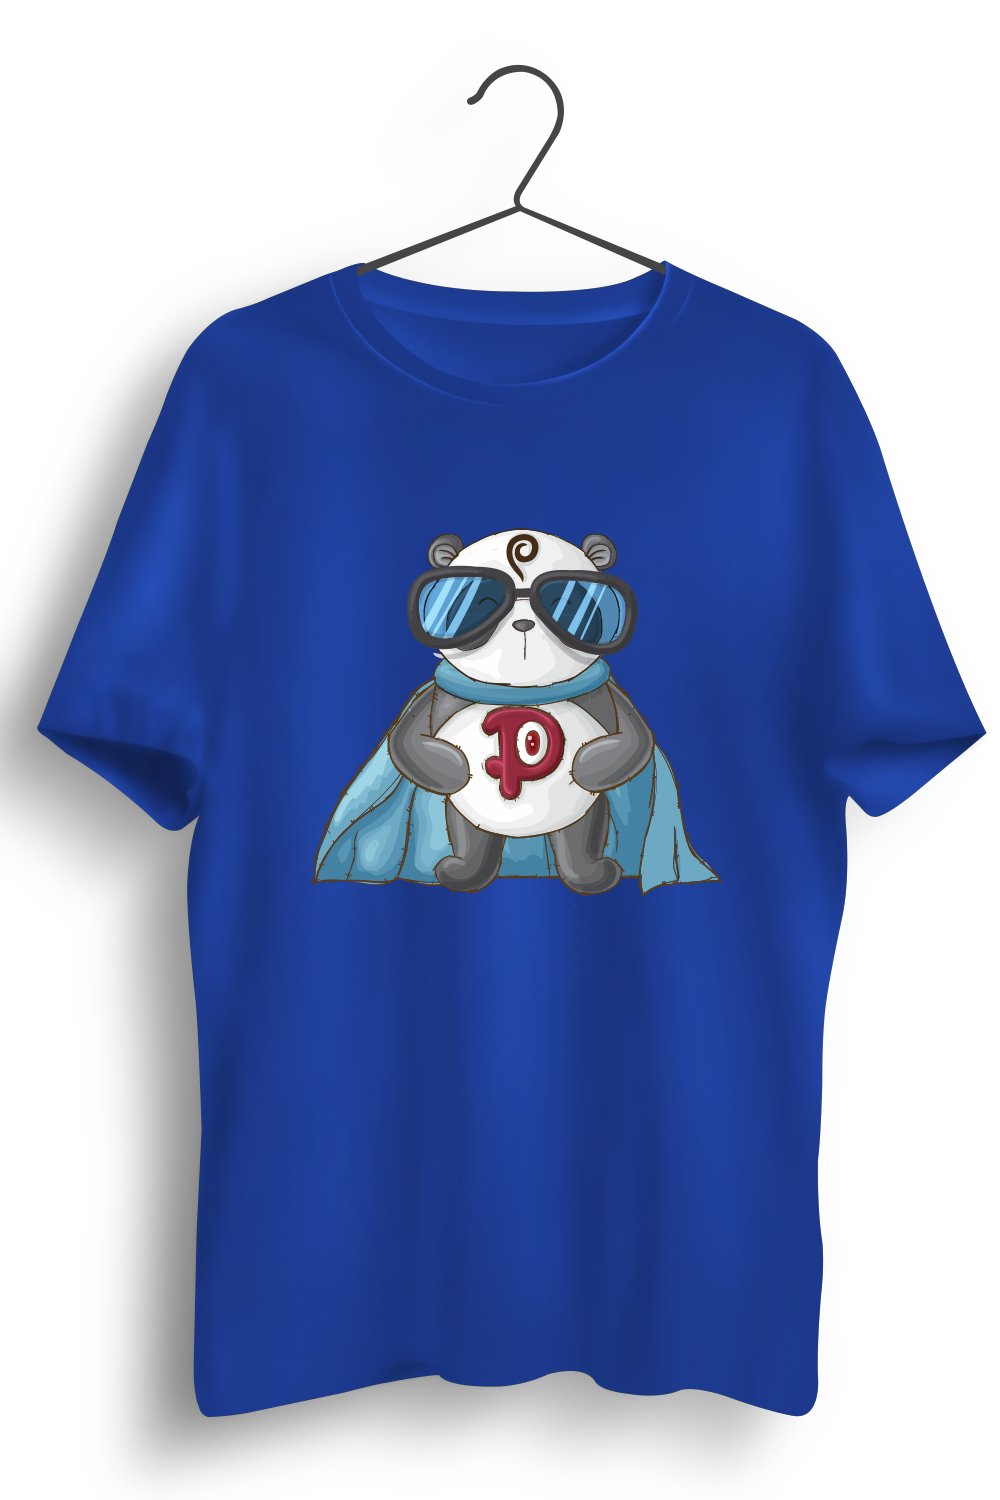 Super Panda Graphic Printed Blue Tshirt